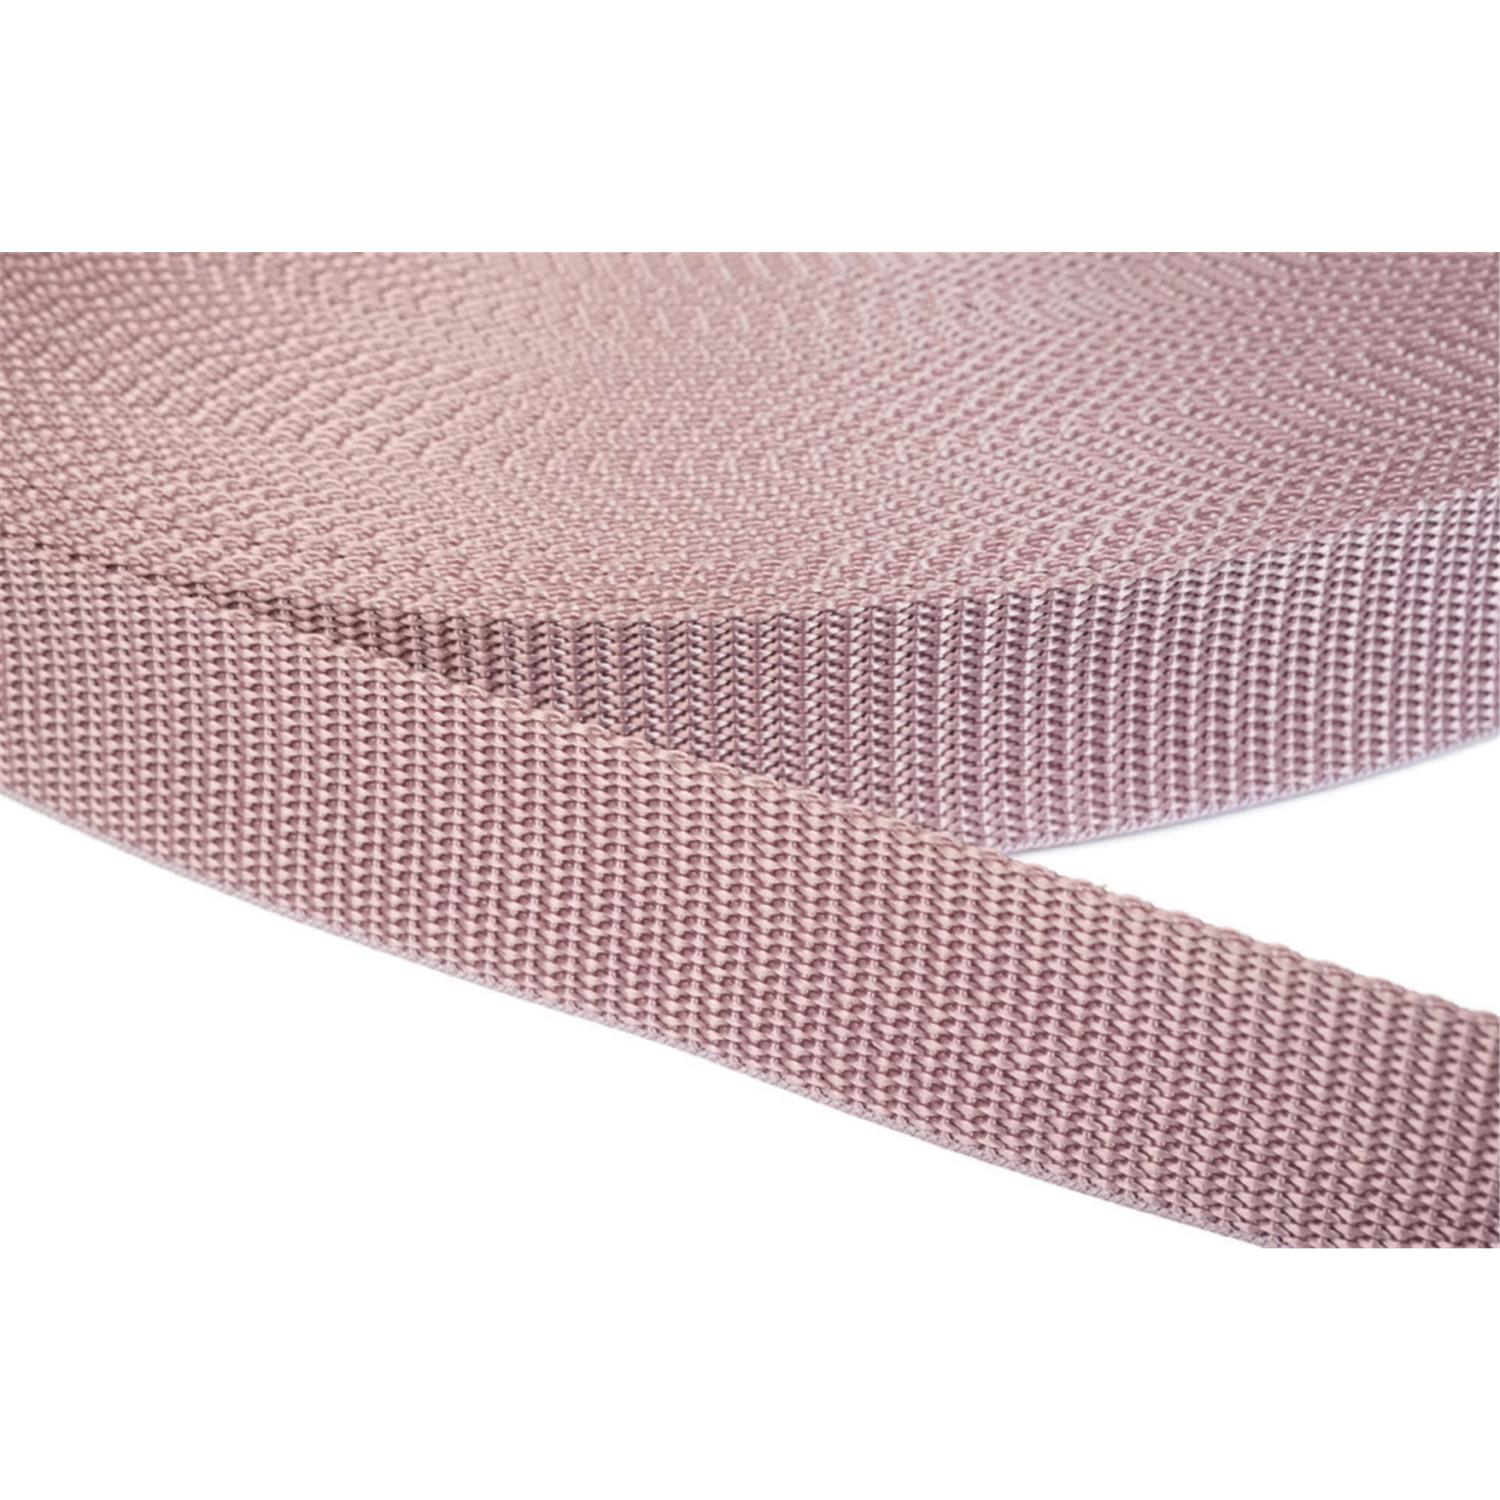 Gurtband 40mm breit aus Polypropylen in 41 Farben 15 - altrosa 50 Meter